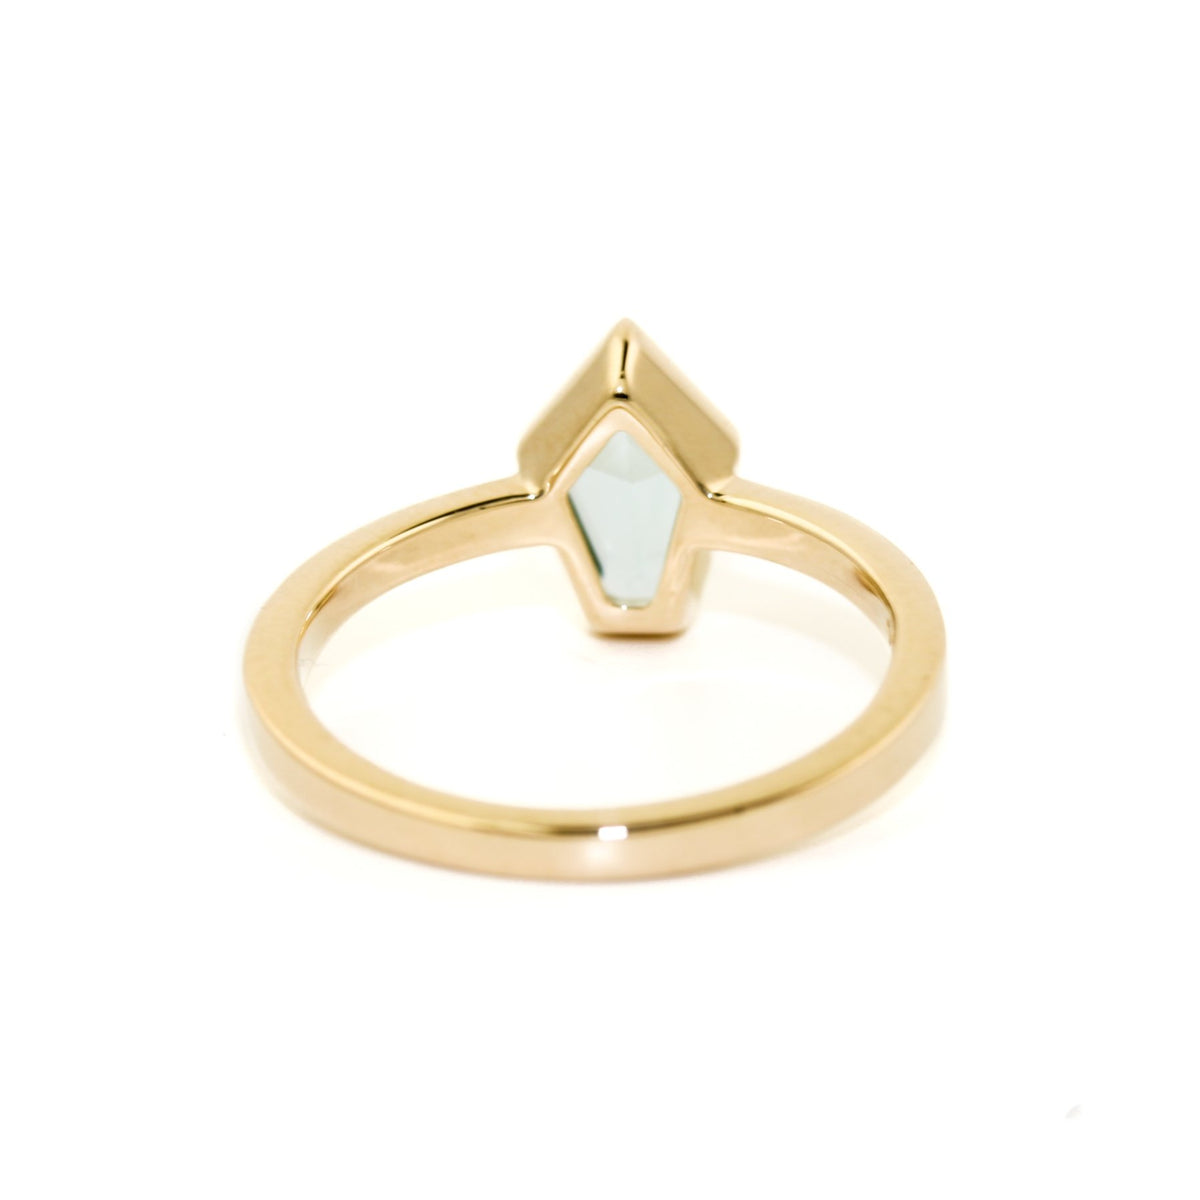 Shield Cut Aquamarine Ring in 14K Gold - Kingdom Jewelry